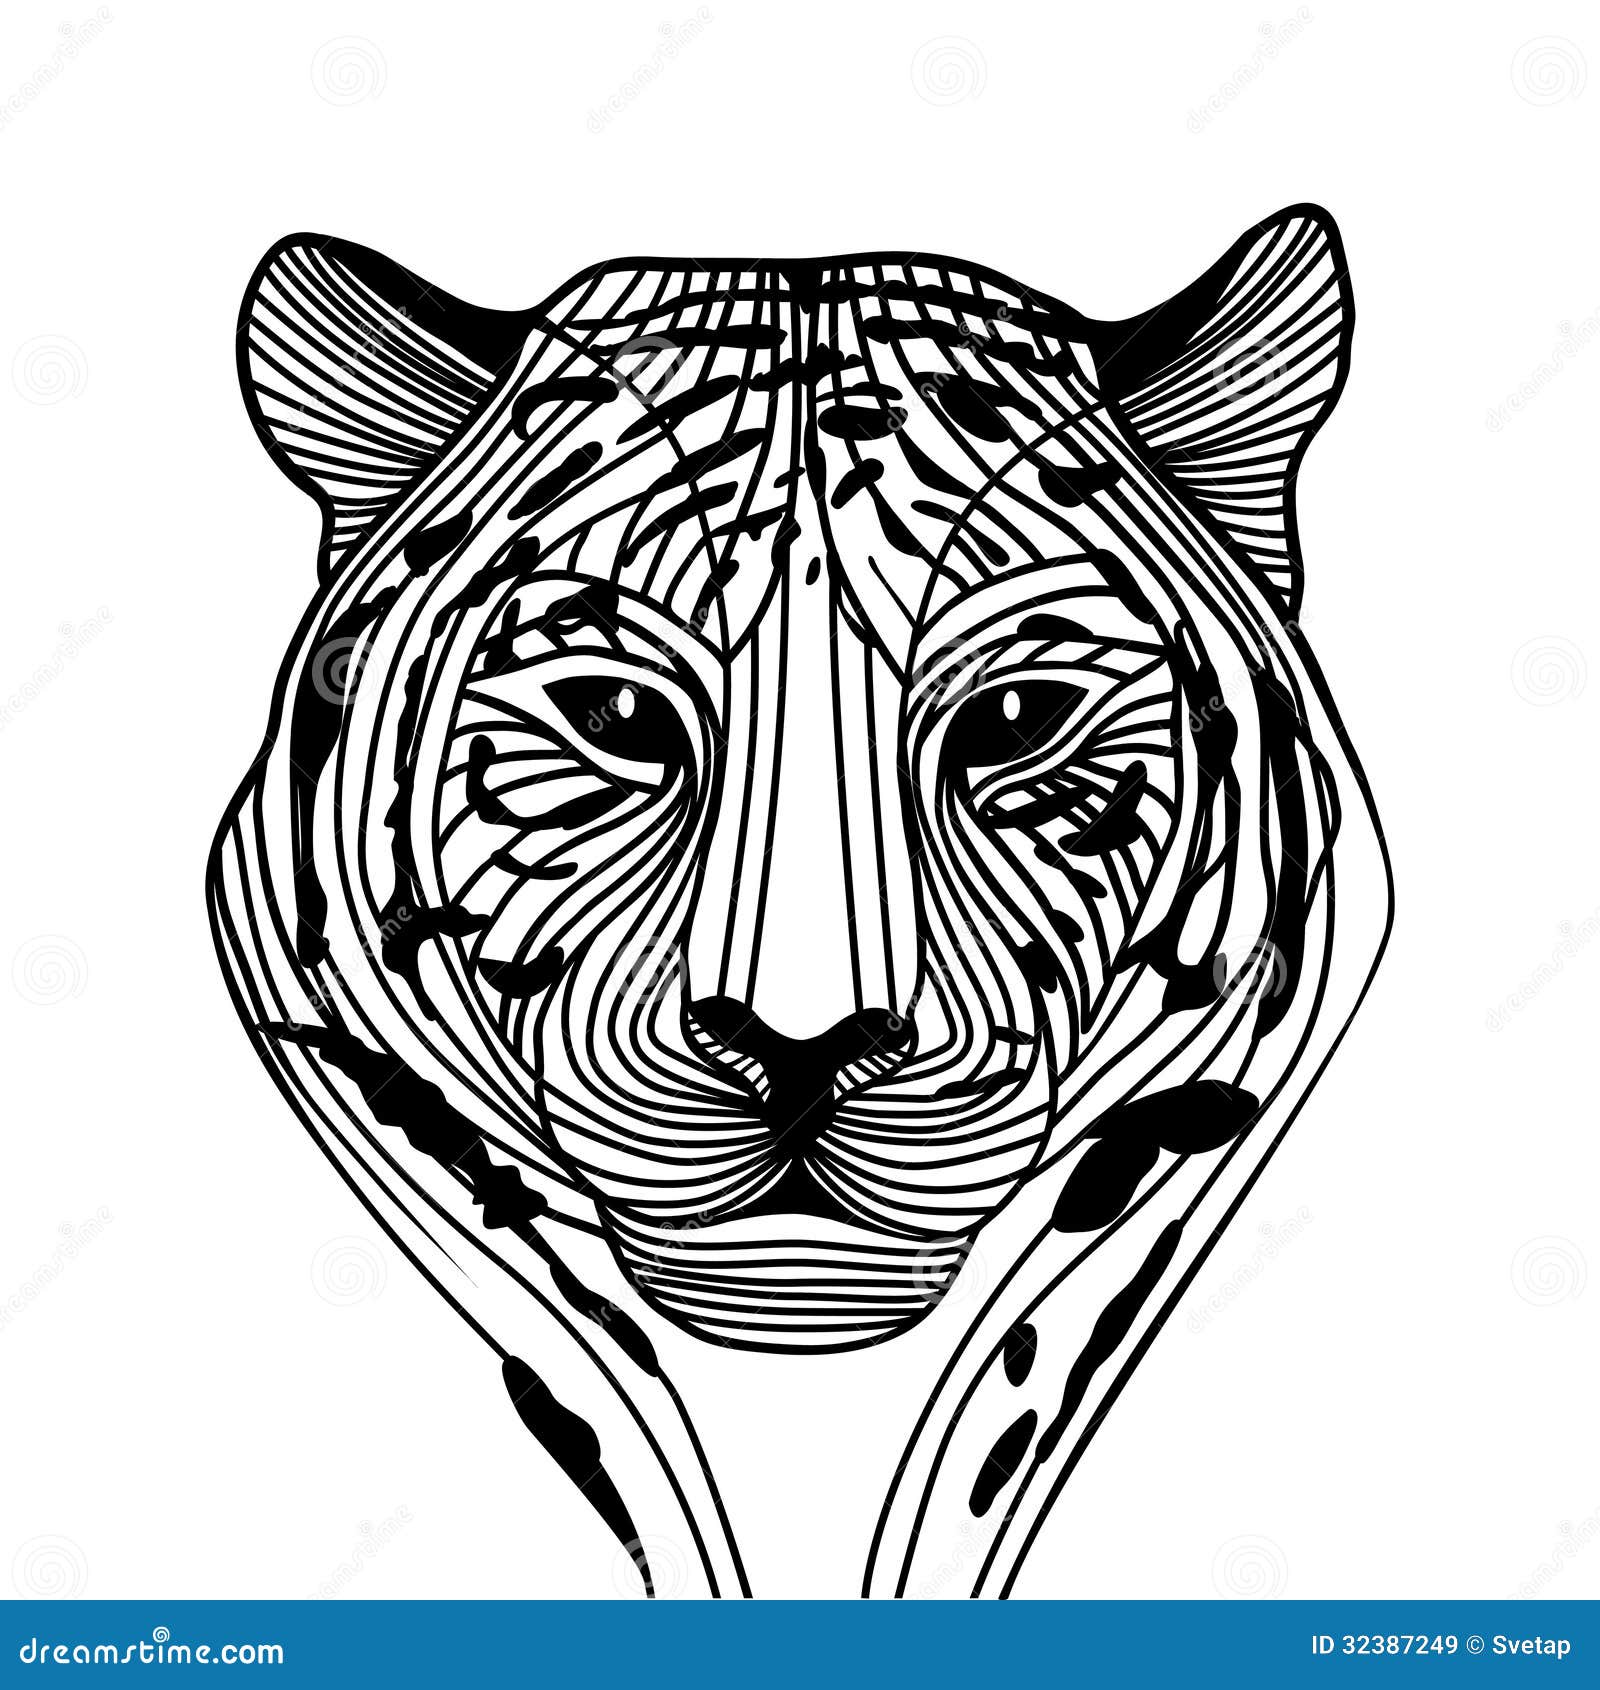 tiger head vector animal illustration for t shirt sketch tattoo design 